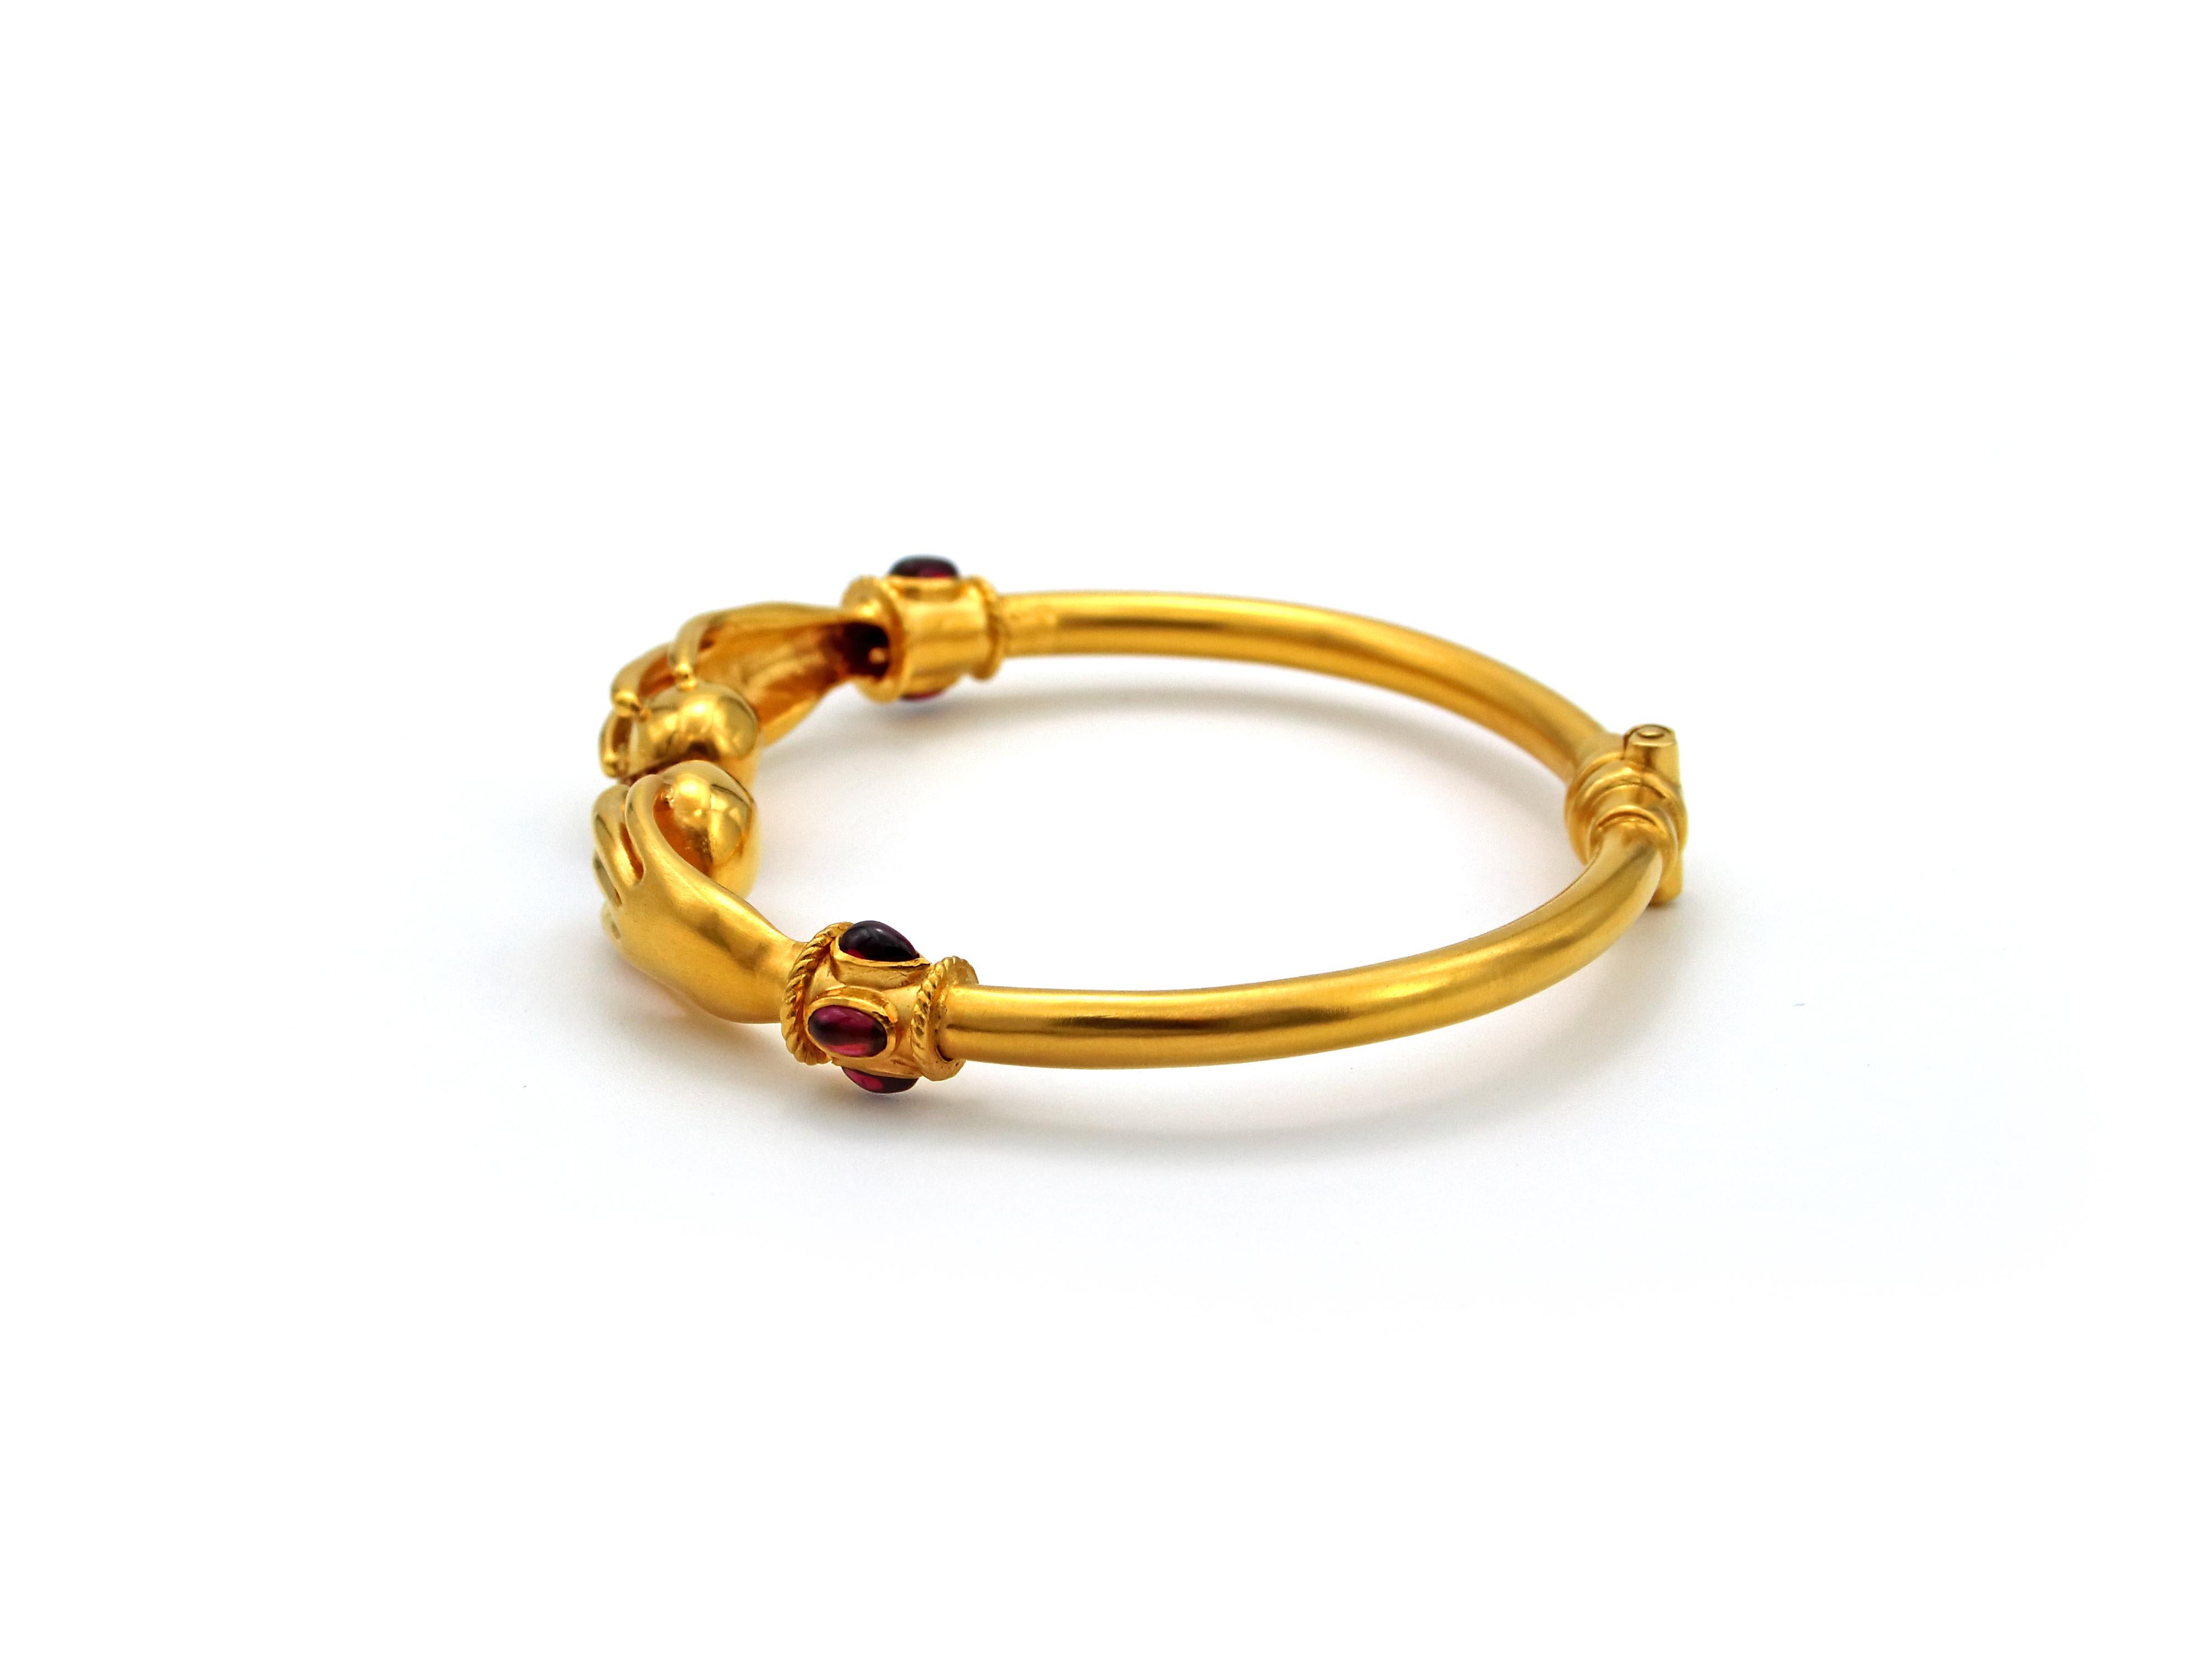 22k gold bangles designs with price in saudi arabia